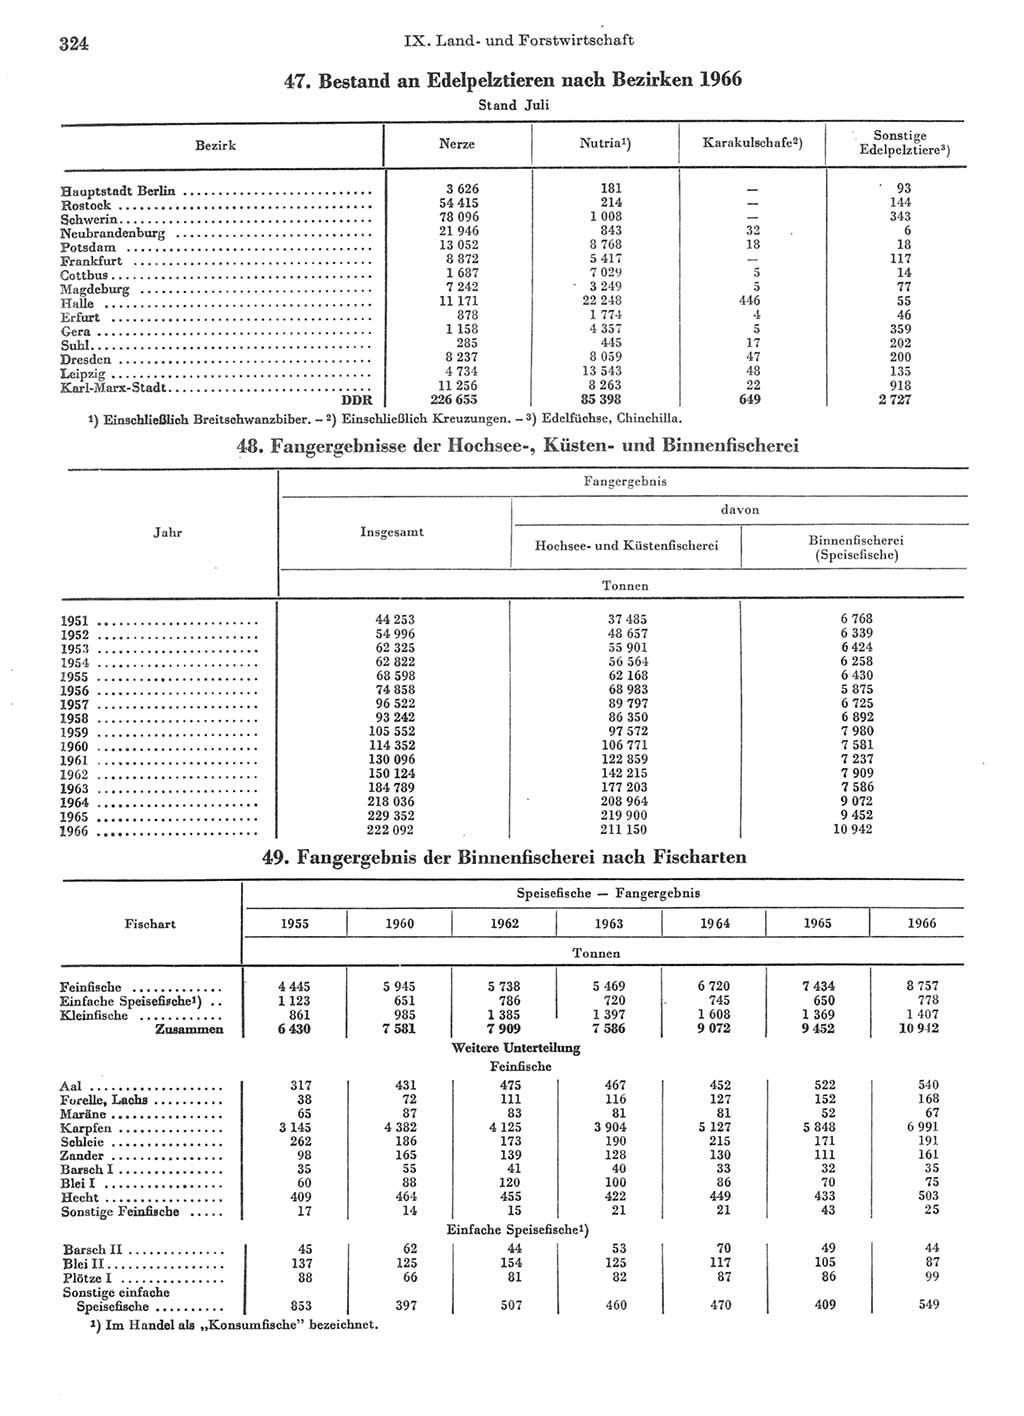 Statistisches Jahrbuch der Deutschen Demokratischen Republik (DDR) 1967, Seite 324 (Stat. Jb. DDR 1967, S. 324)